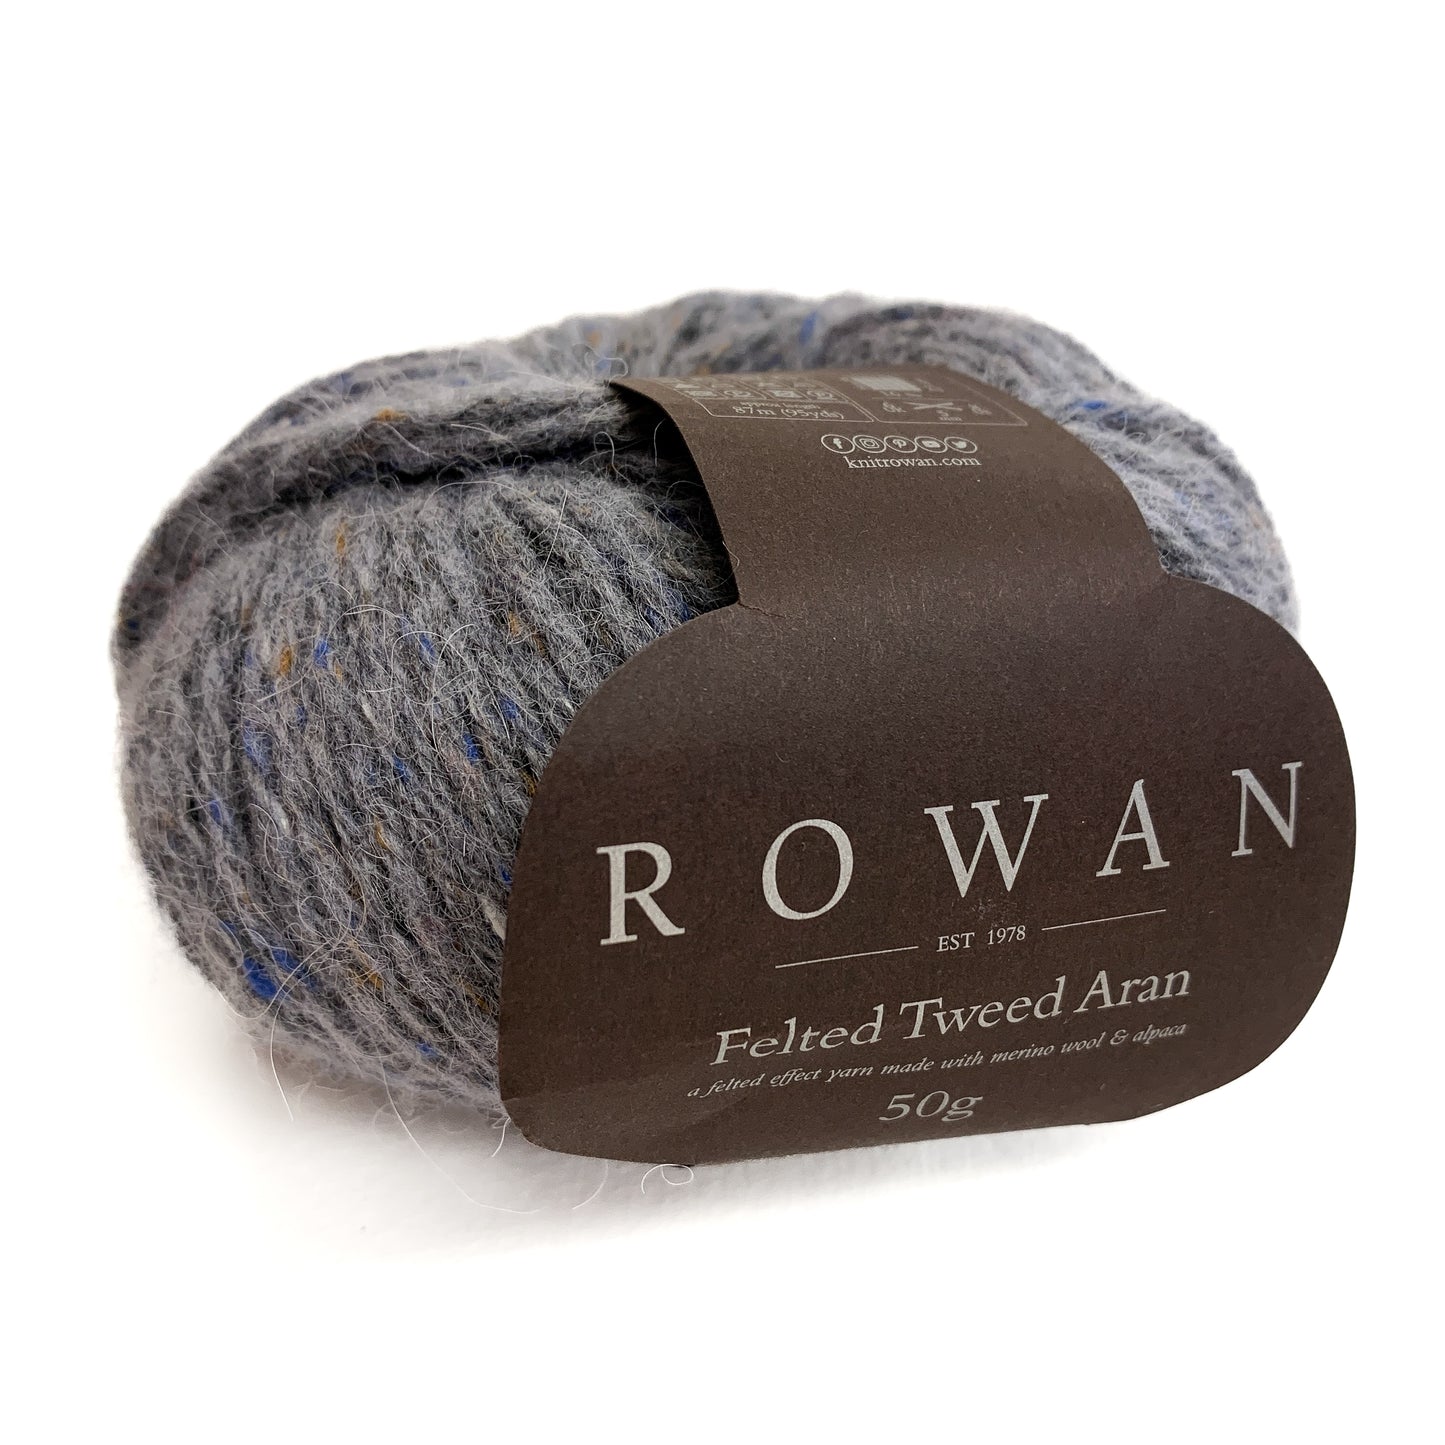 Rowan - Felted Tweed Aran